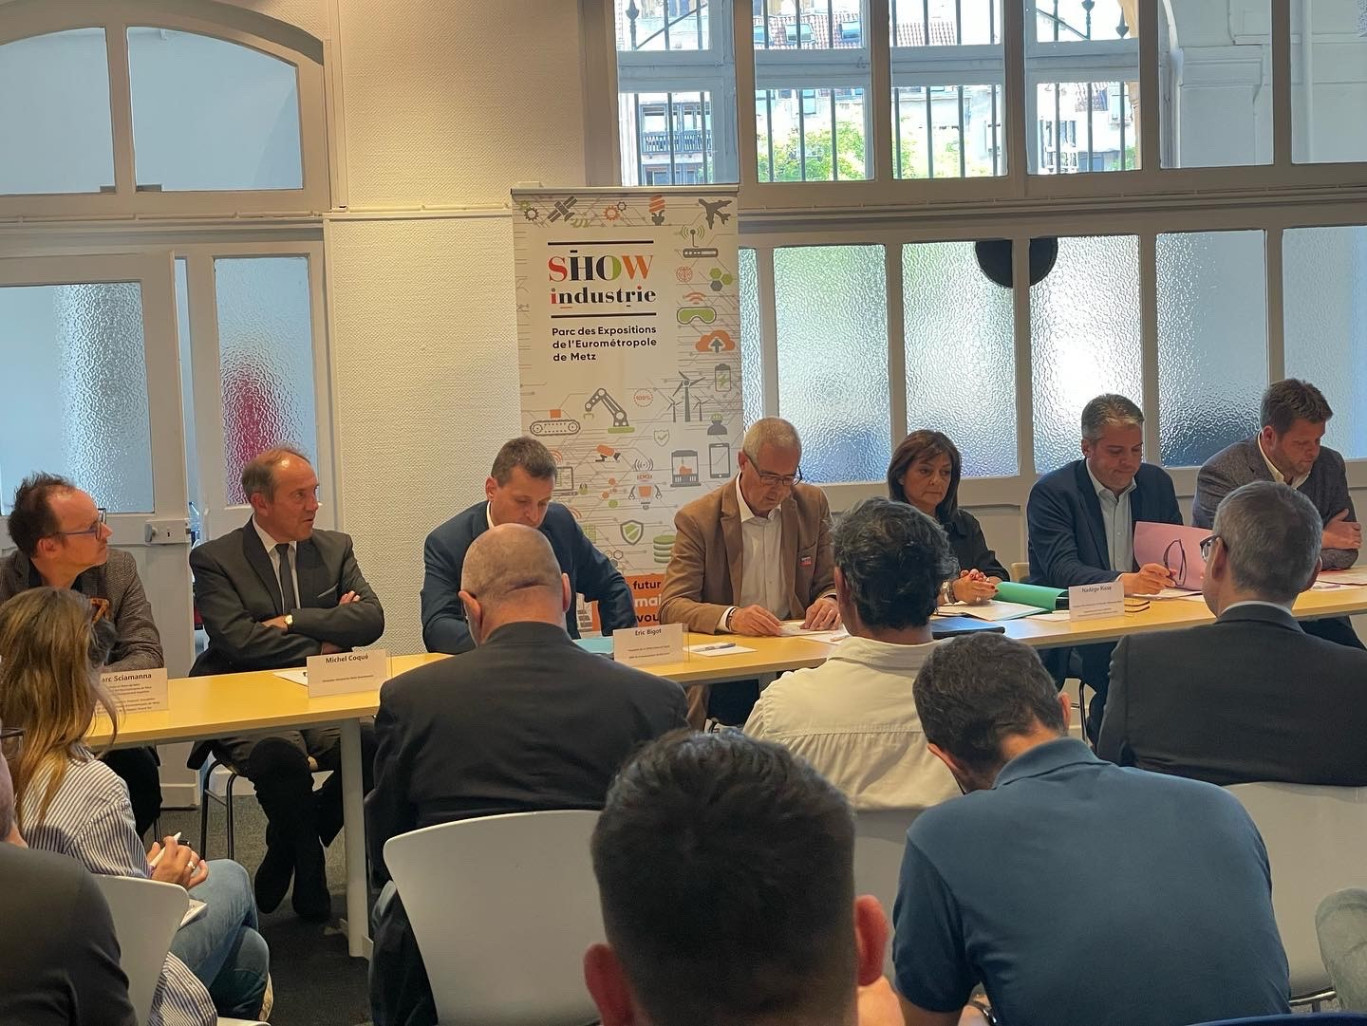 Le 6 septembre, les différents partenaires de Show Industrie (les 25 et 26 novembre prochain au parc des expositions de l’Eurométropole de Metz), ont lancé officiellement l’événement à l’occasion d’une conférence à Metz. 